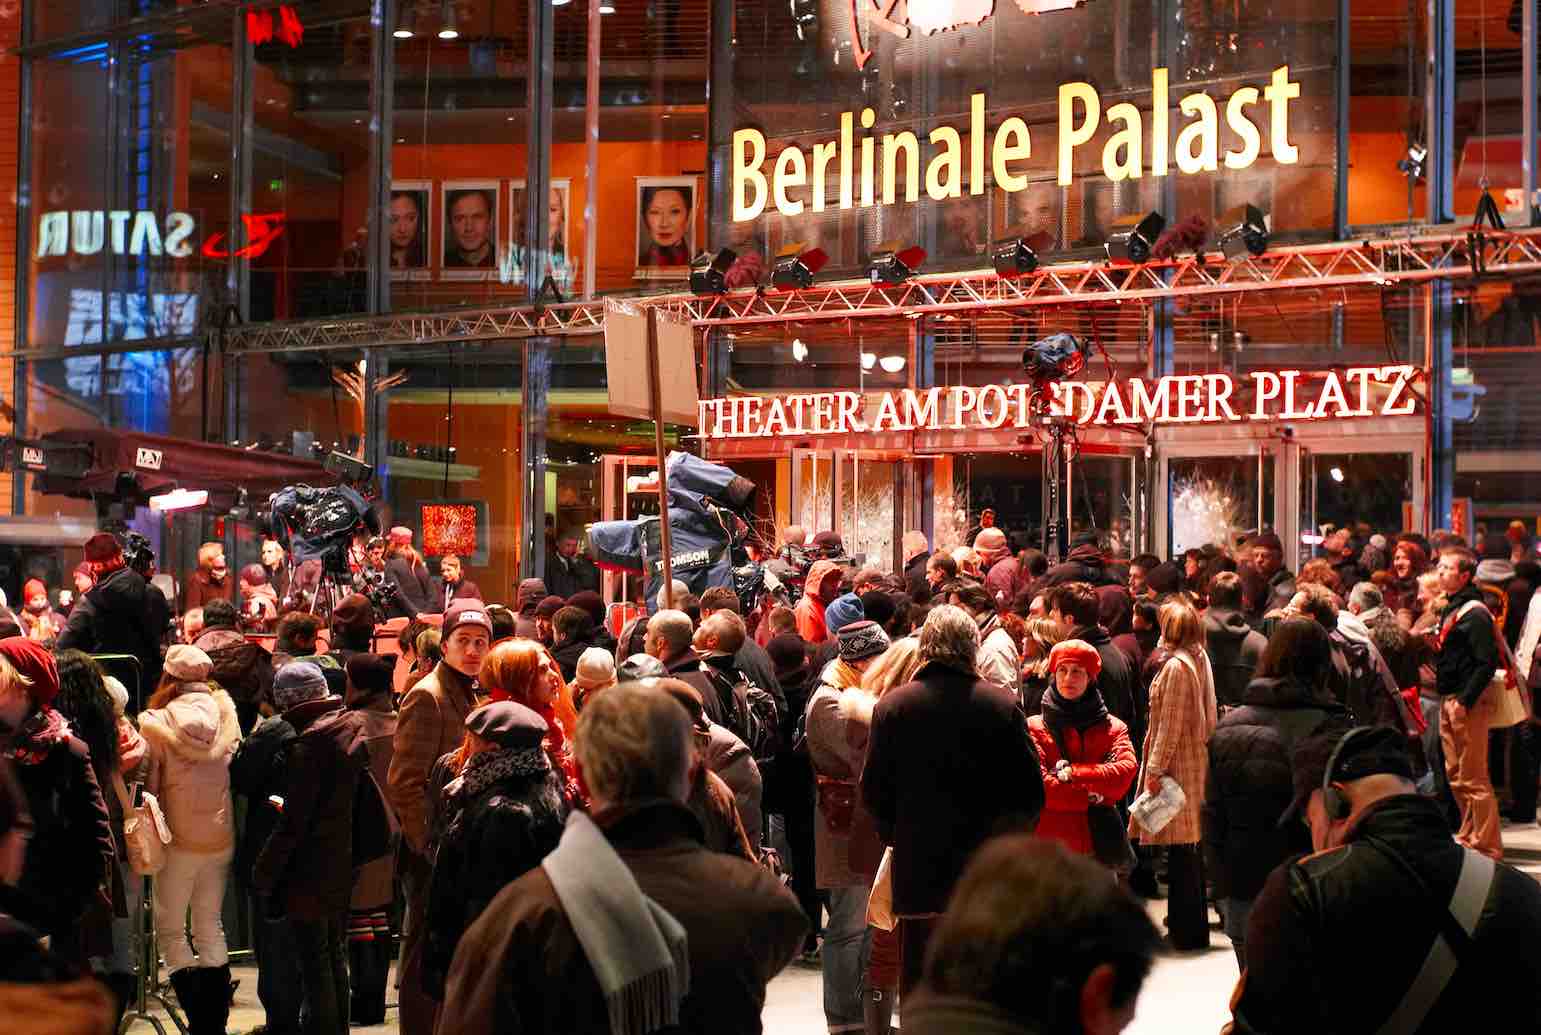 Folla antistante il palazzo dove si svolge il festival del cinema di berlino (anno 2017)